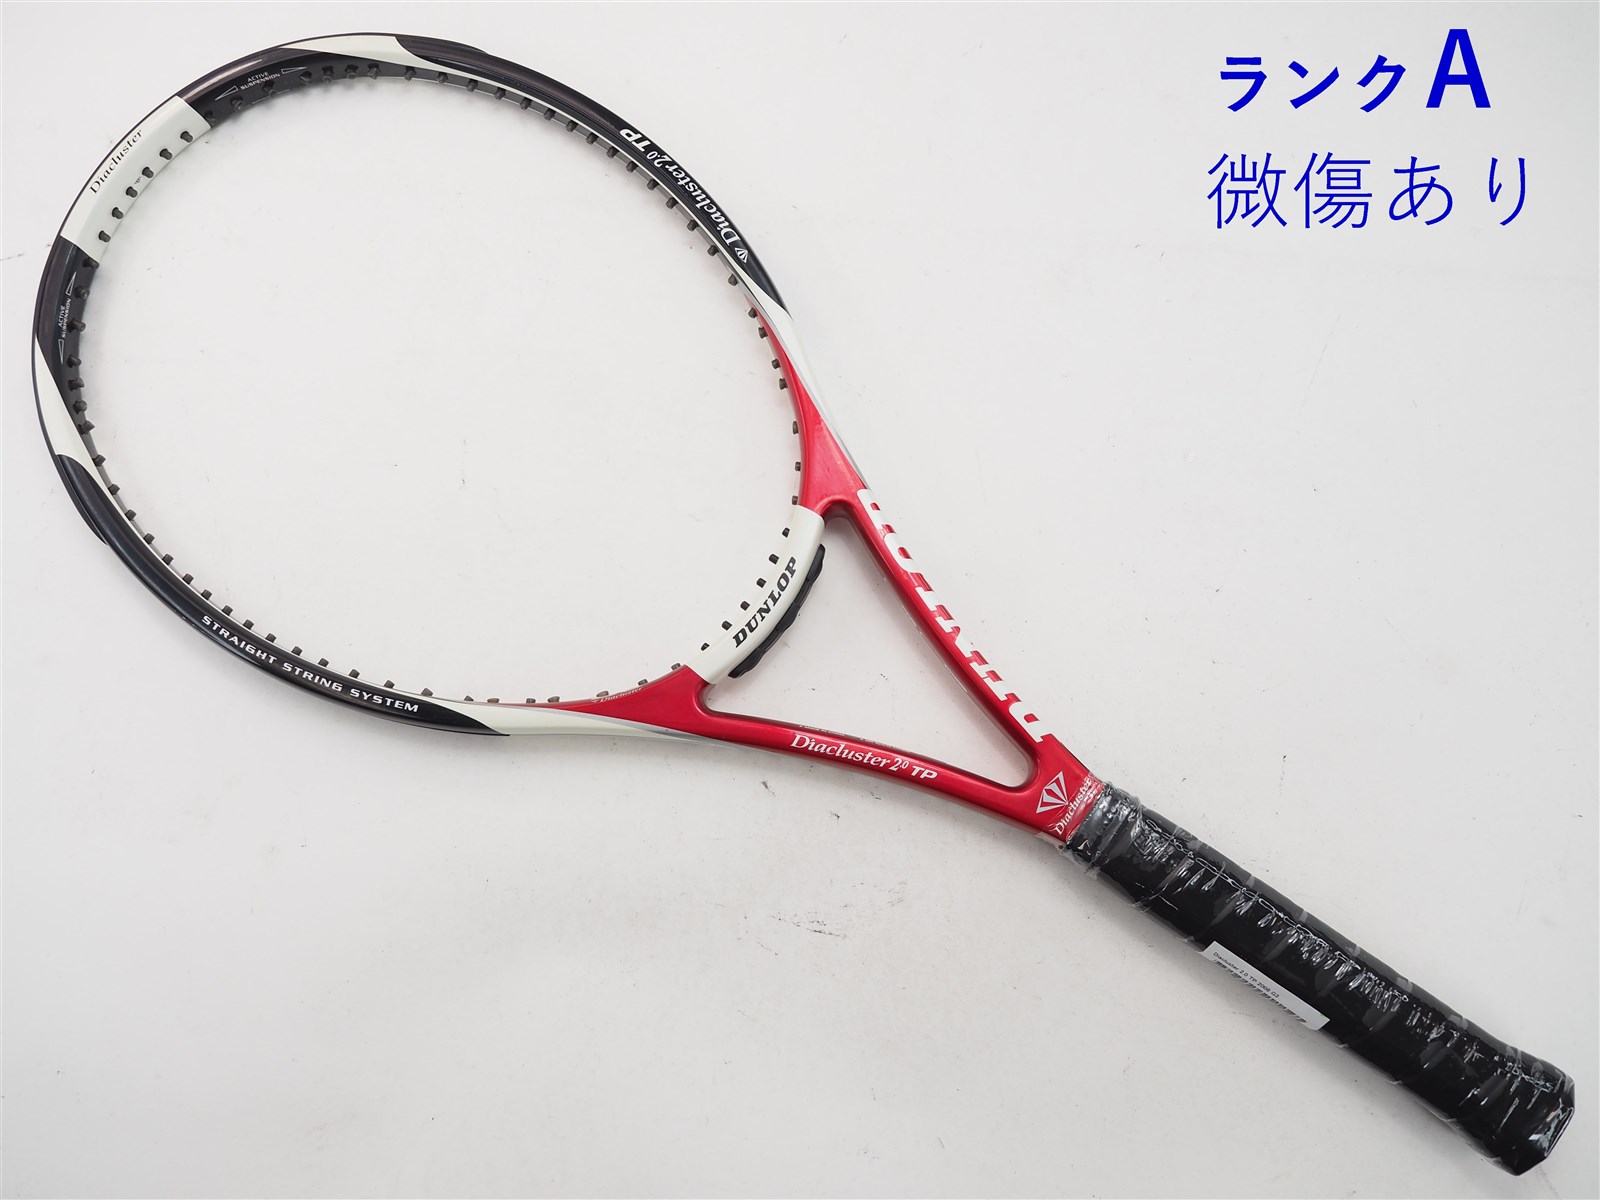 テニスラケット ダンロップ ダイアクラスター 2.0 TP 2008年モデル (G2)DUNLOP Diacluster 2.0 TP  200821mm重量 - ラケット